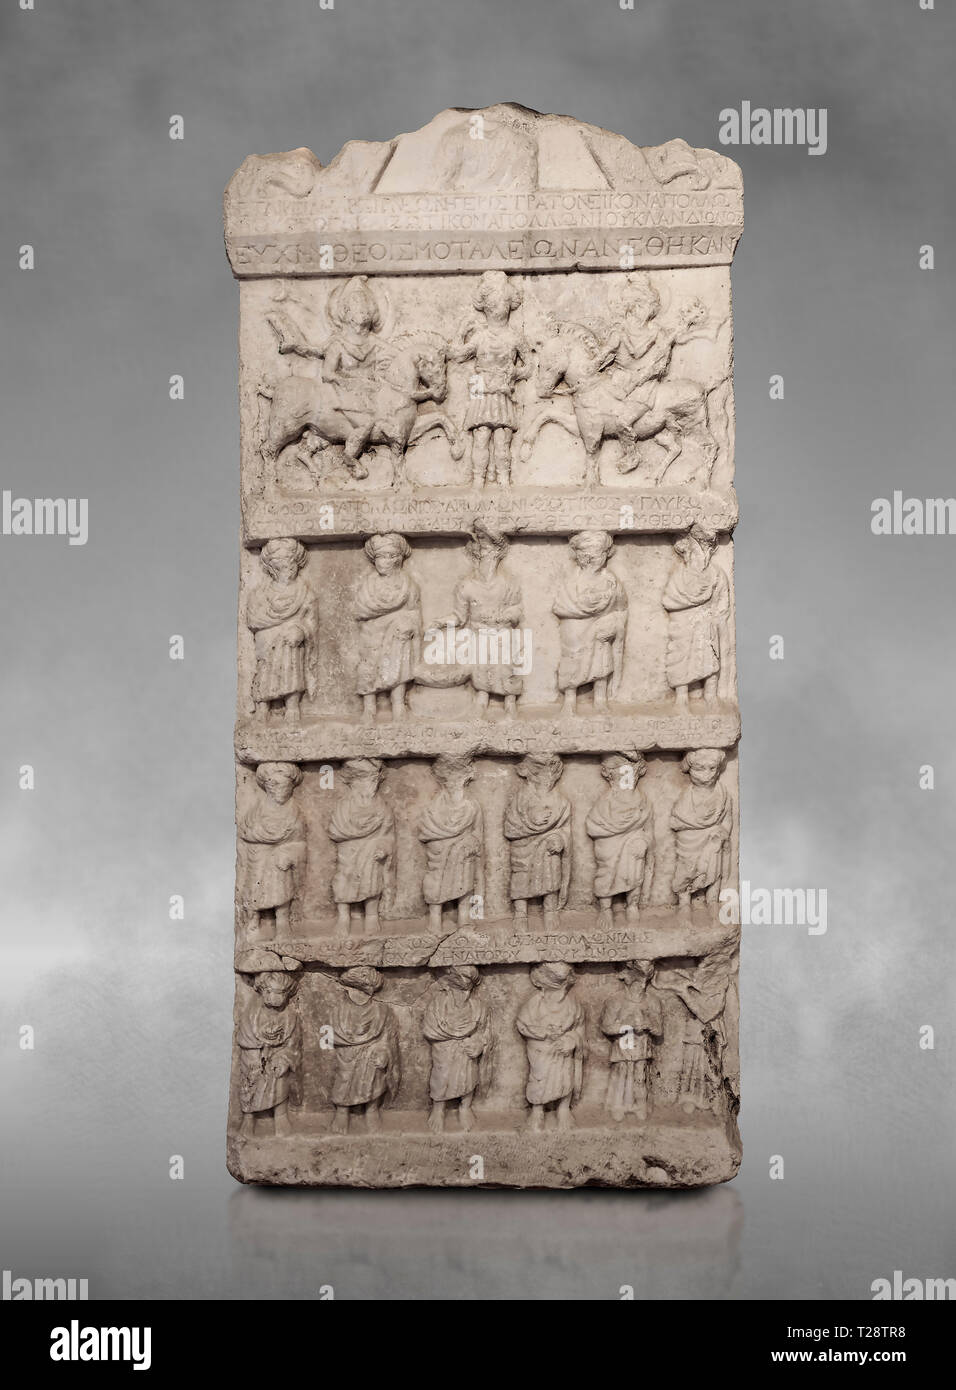 Stèle funéraire sculpture relief romain. Fin de la période romaine. Musée Archéologique de Hierapolis, Turquie Banque D'Images